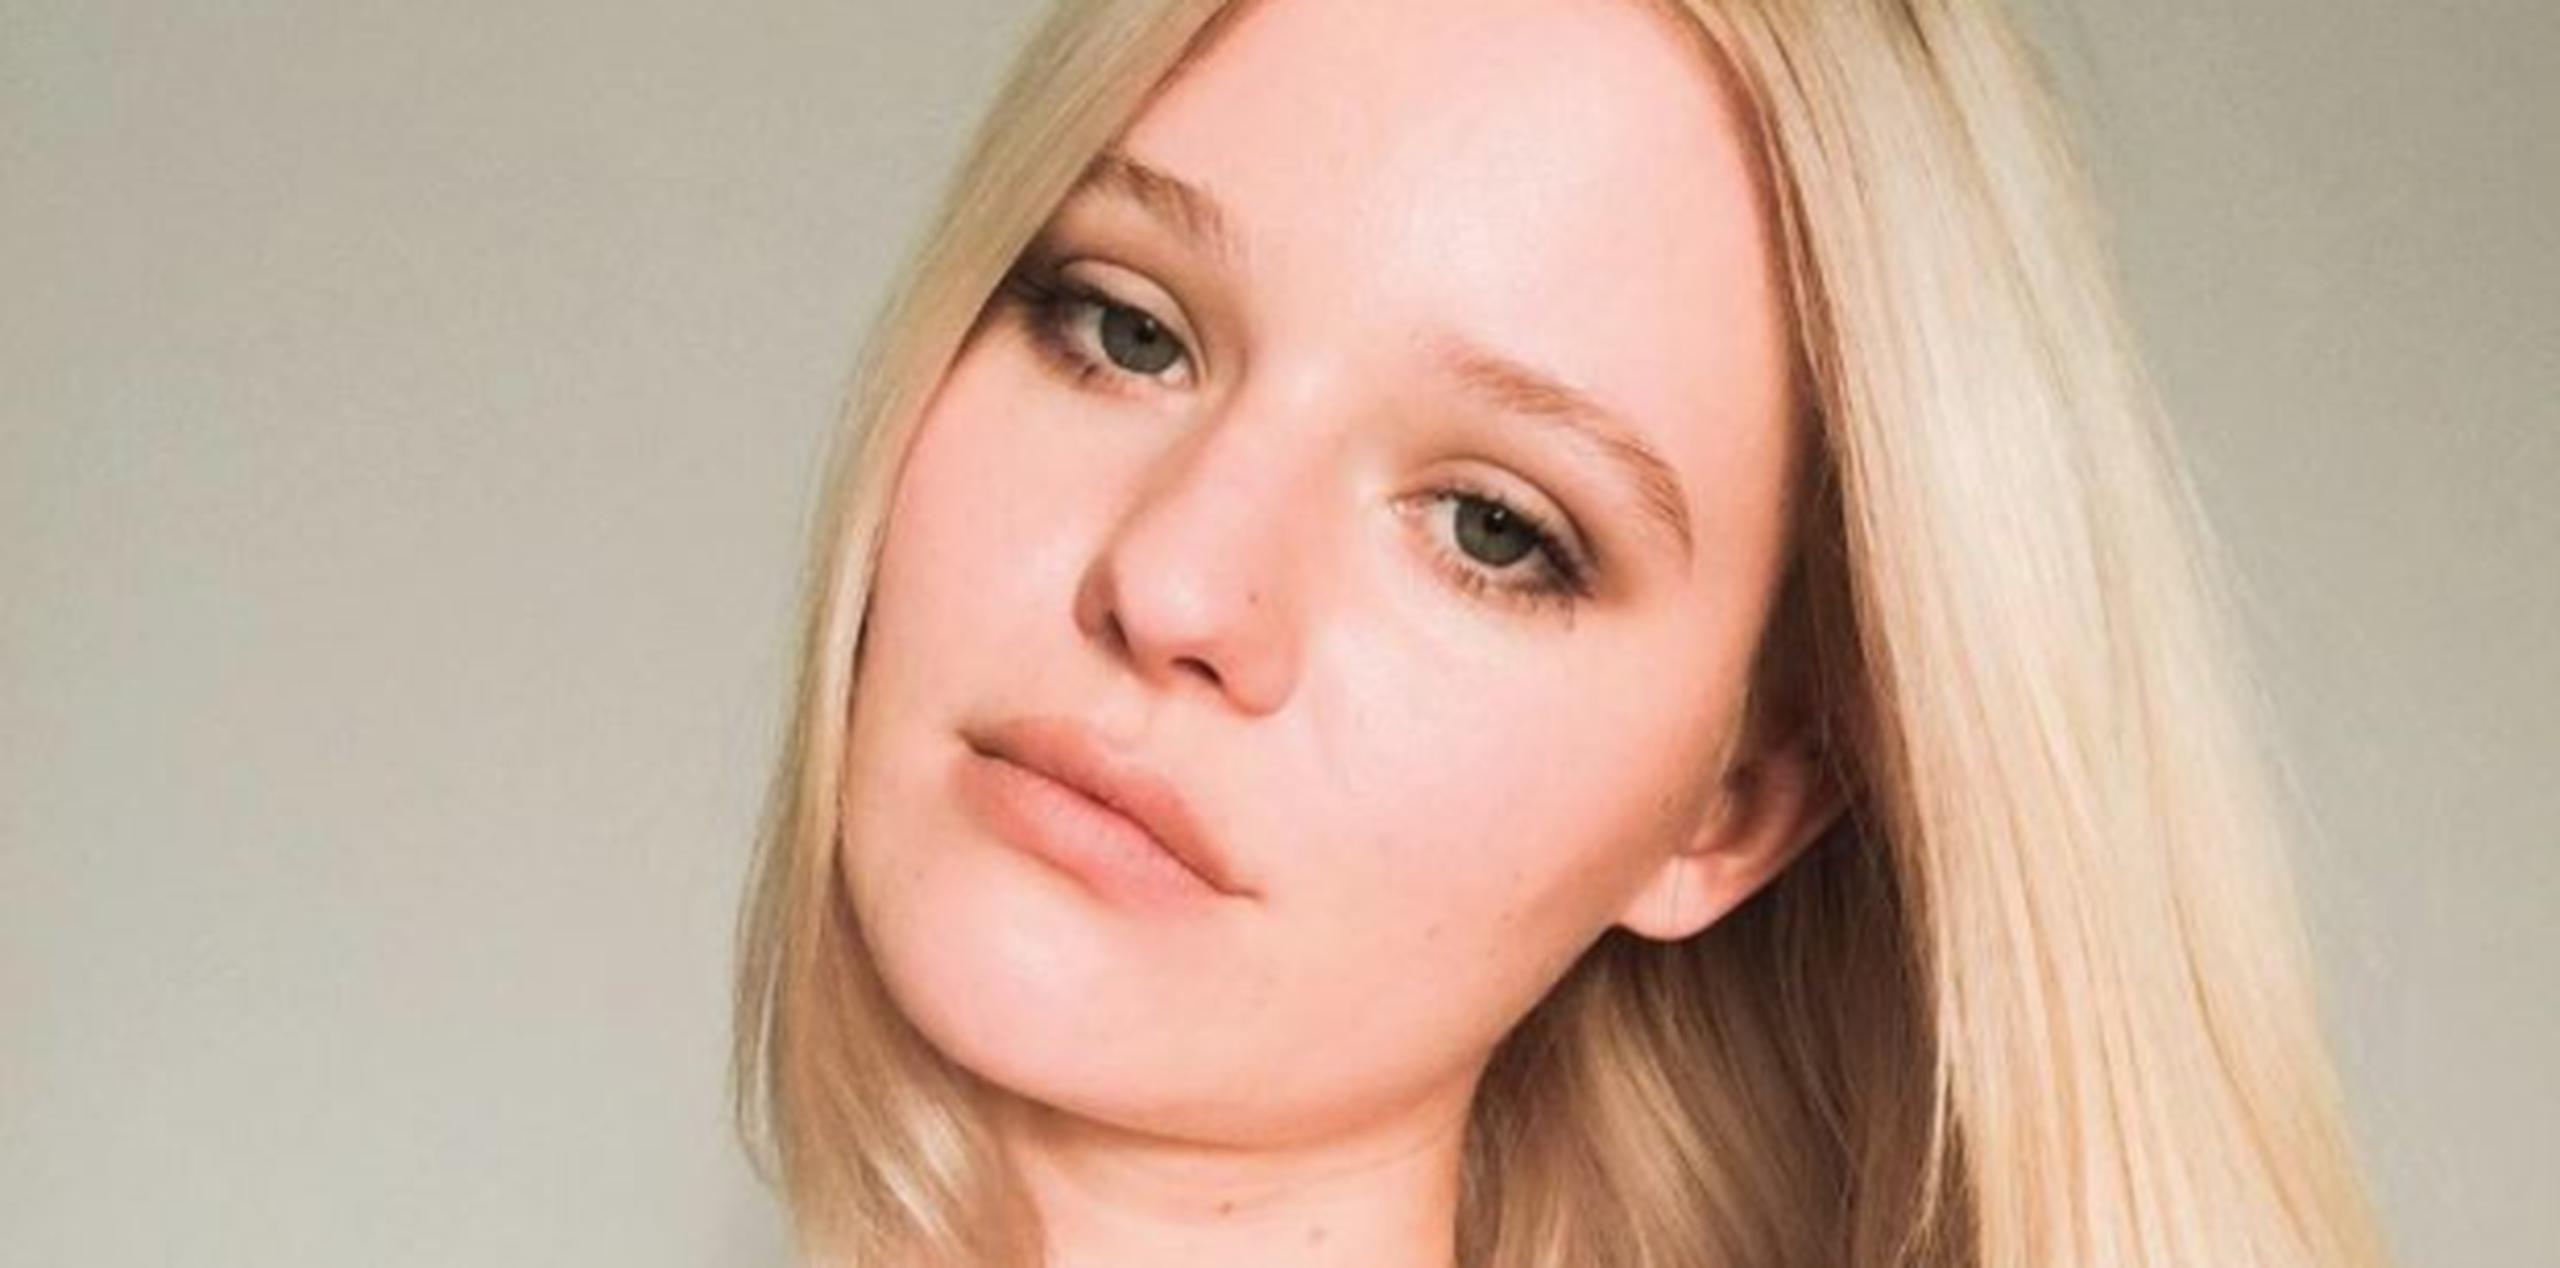 Arvida Byström tiene 26 años. (Instagram)